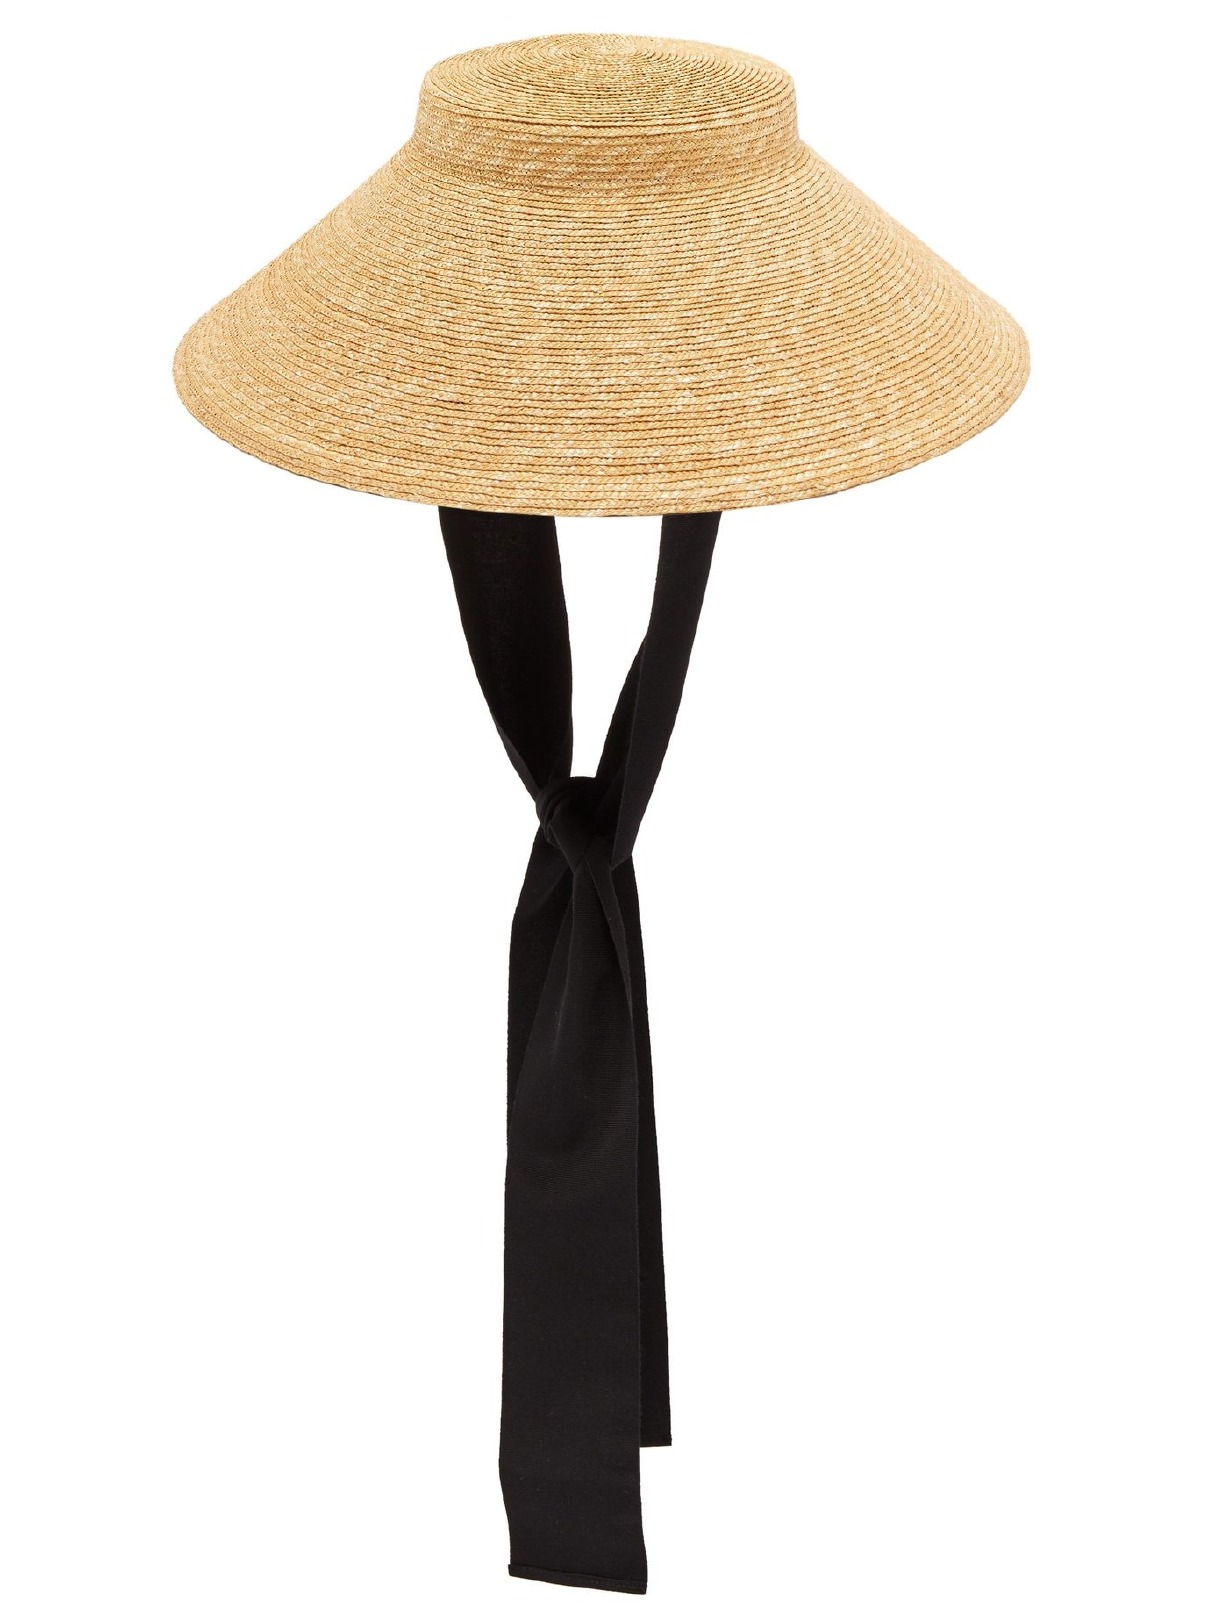 Trend Alarmı: XXL Hasır Şapkalar